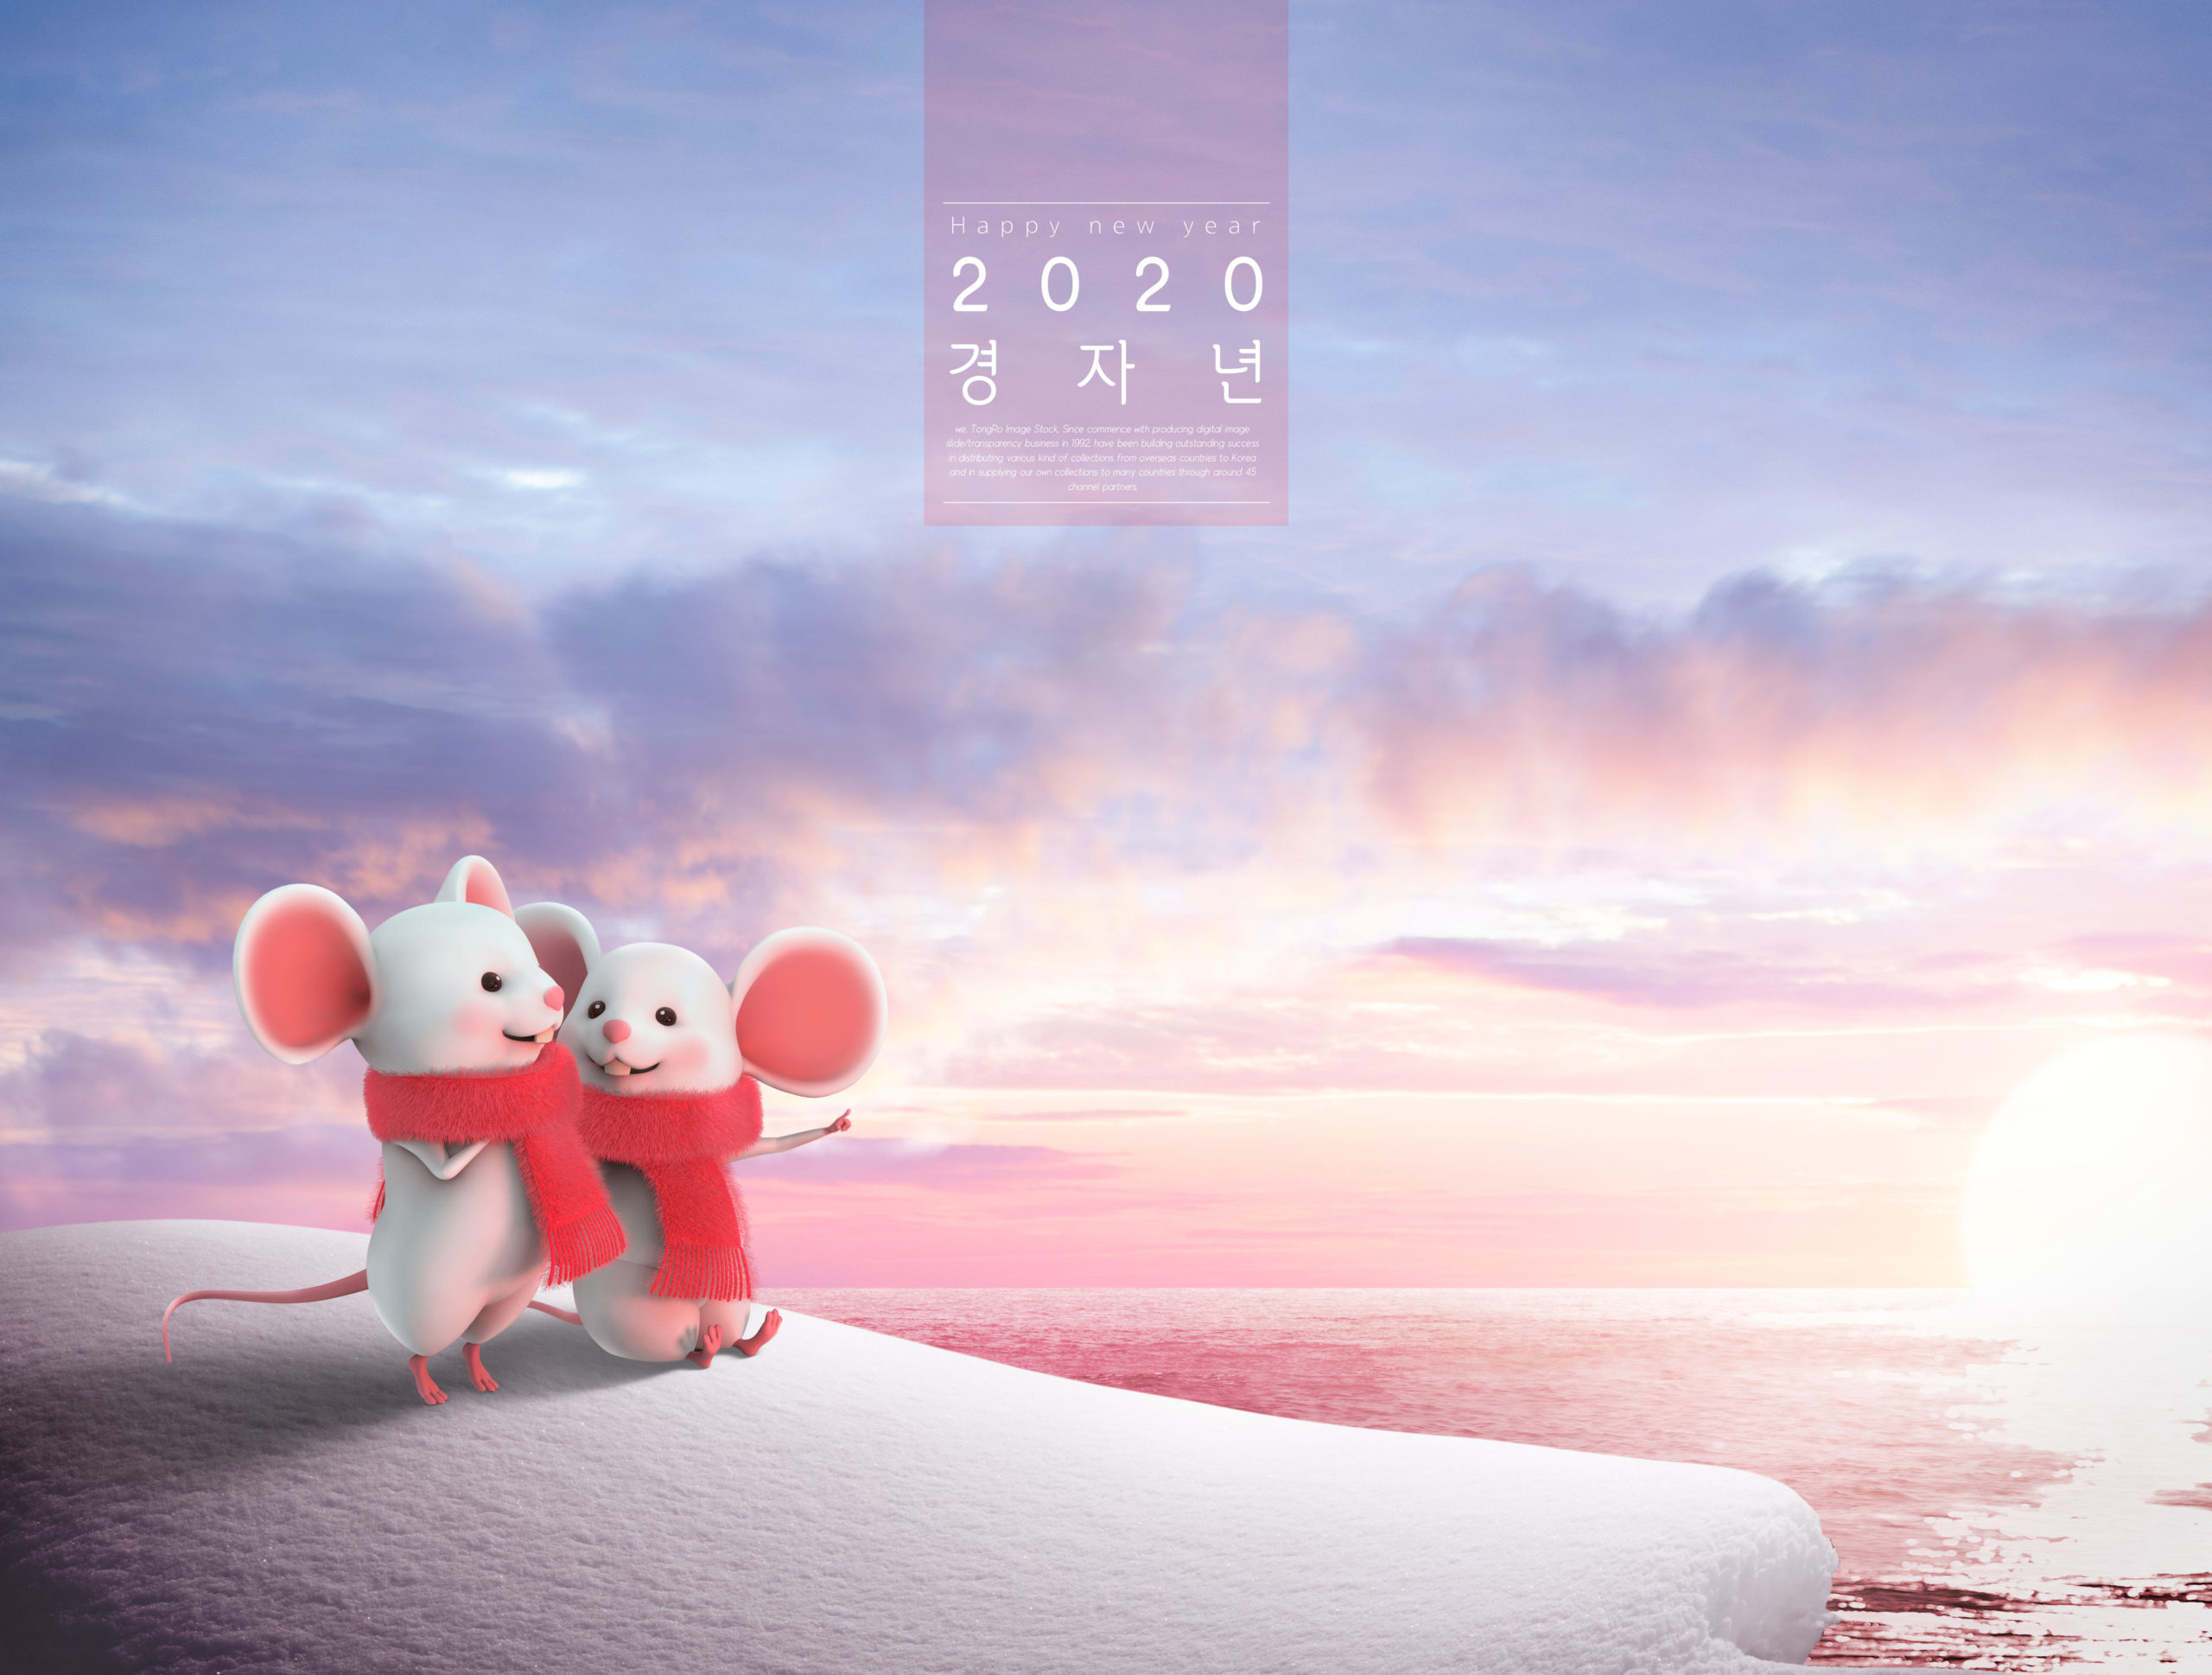 情侣小老鼠2020新年快乐主题Banner/背景psd素材插图